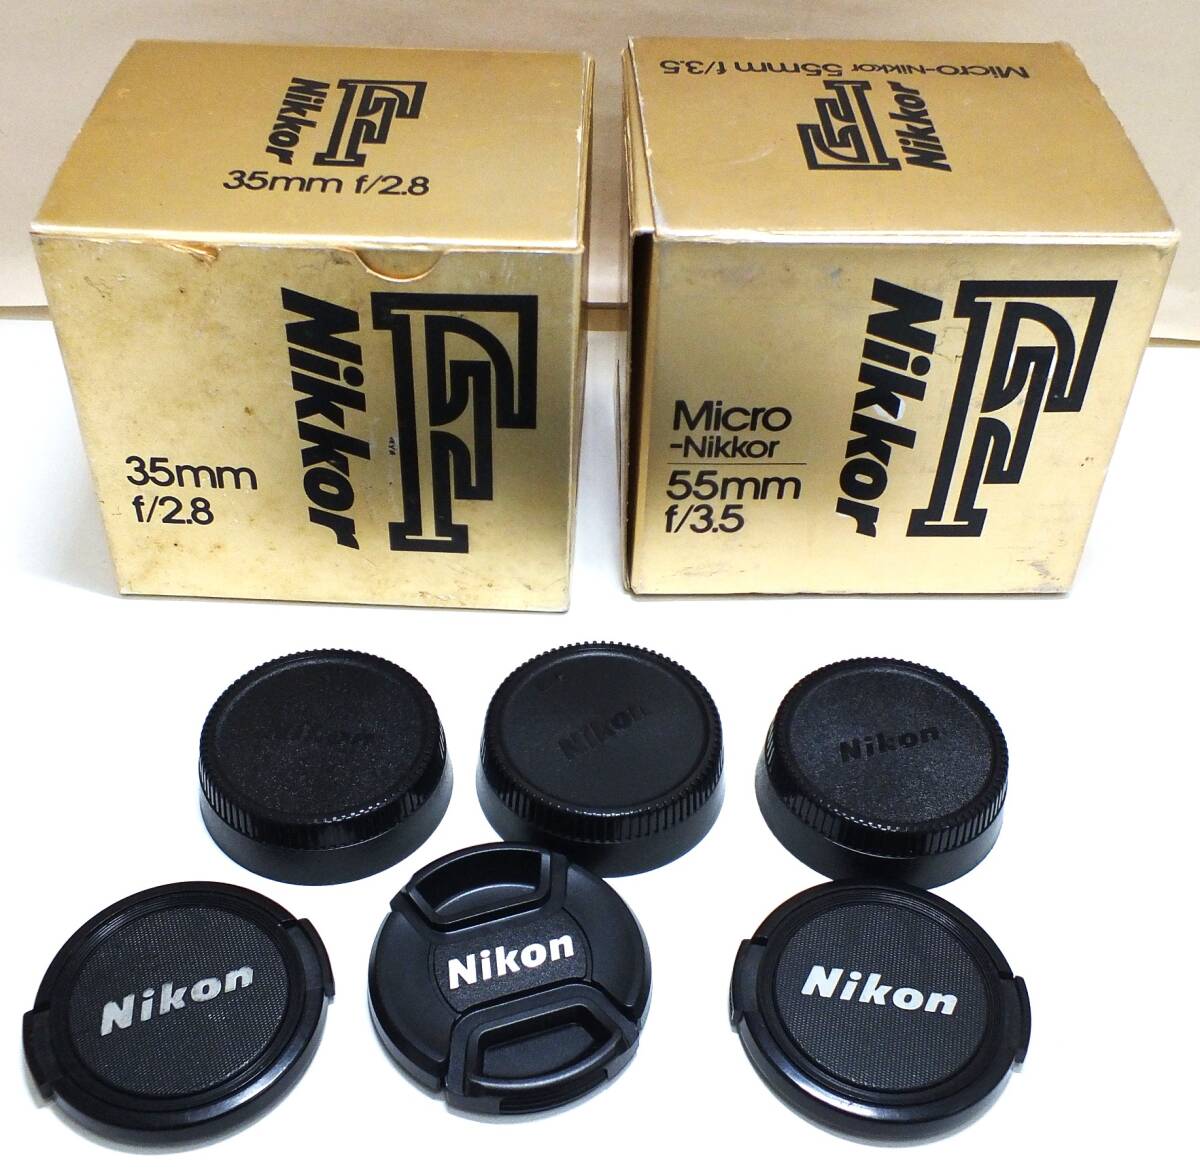 10K lucky bag LENS lens NIKON NIKKOR F Nikkor 50mm 1:1.4 35mm 1:2.8 55mm 1:3.5 Ai lens 3 point summarize 1 jpy start 